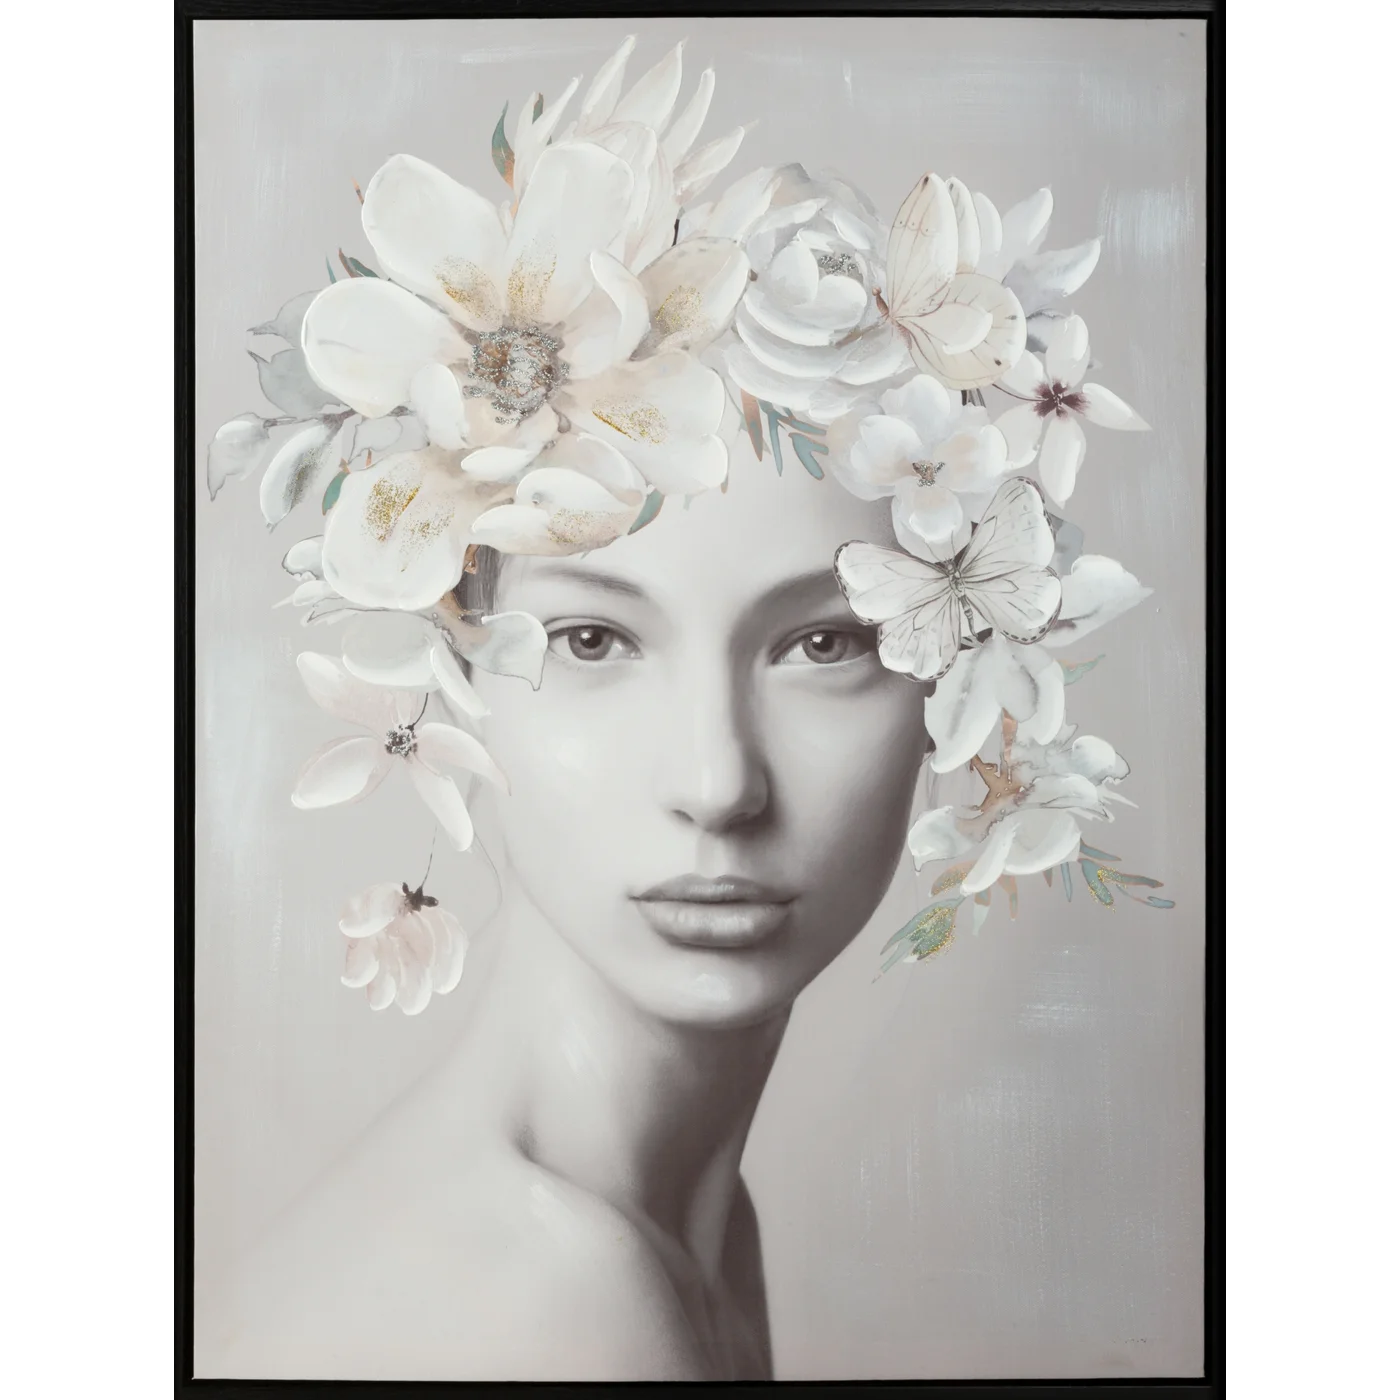 Obraz ROMANCE 1 portret kobiety w nakryciu głowy z kwiatów ręcznie malowany na płótnie w ramie